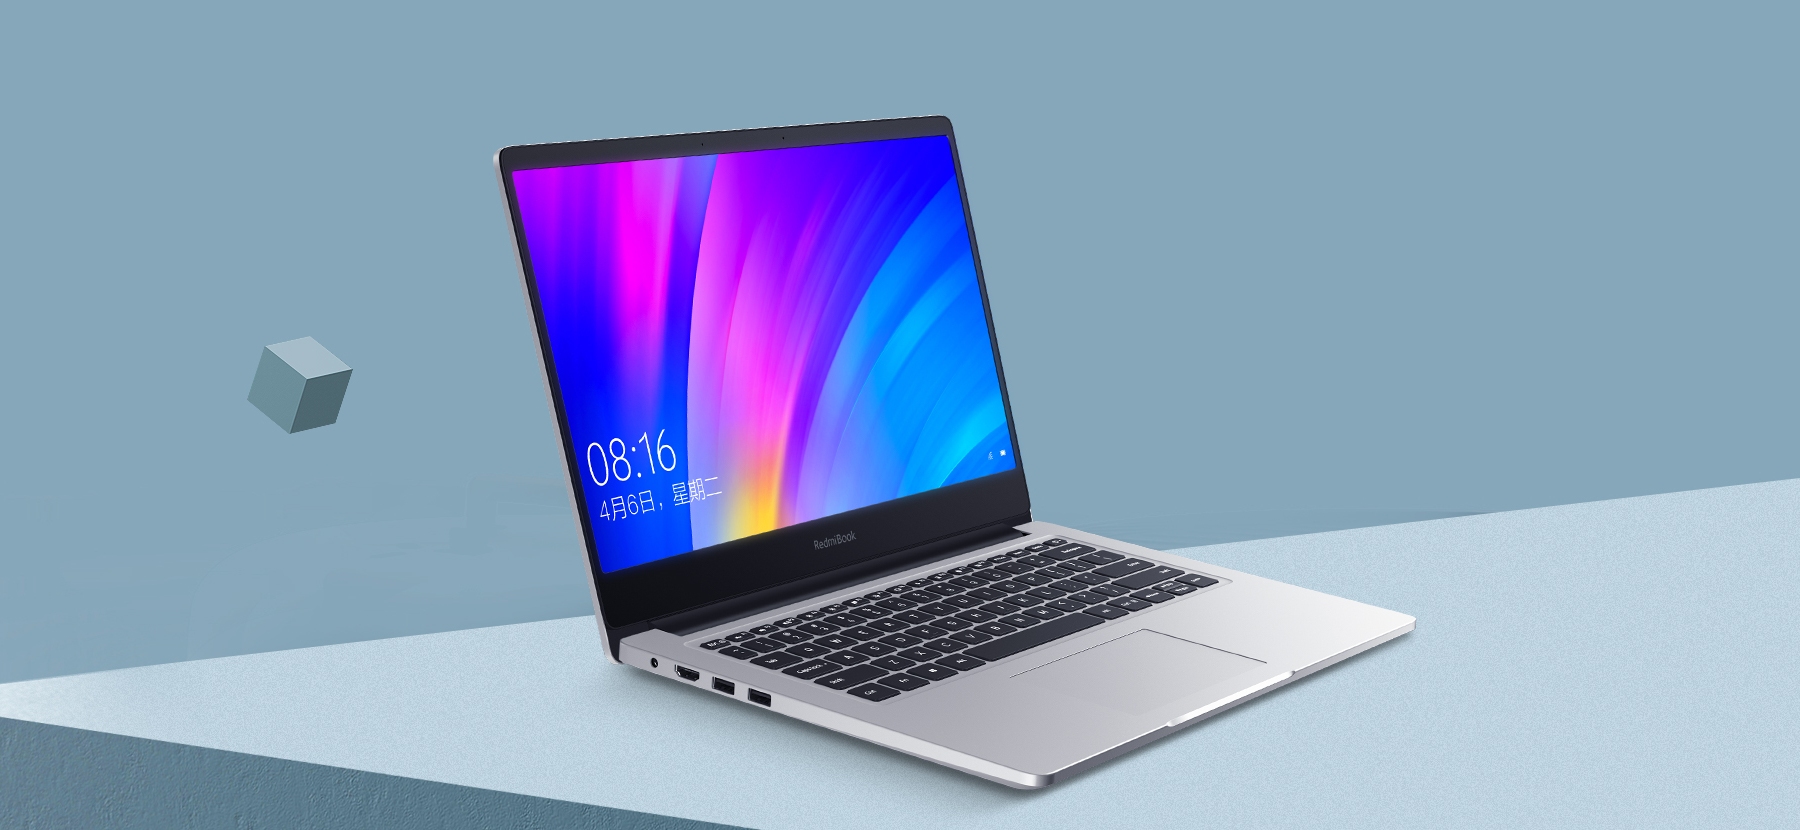 RedmiBook 14 zaprezentowany! Ciekawy laptop w całkiem korzystnej cenie!